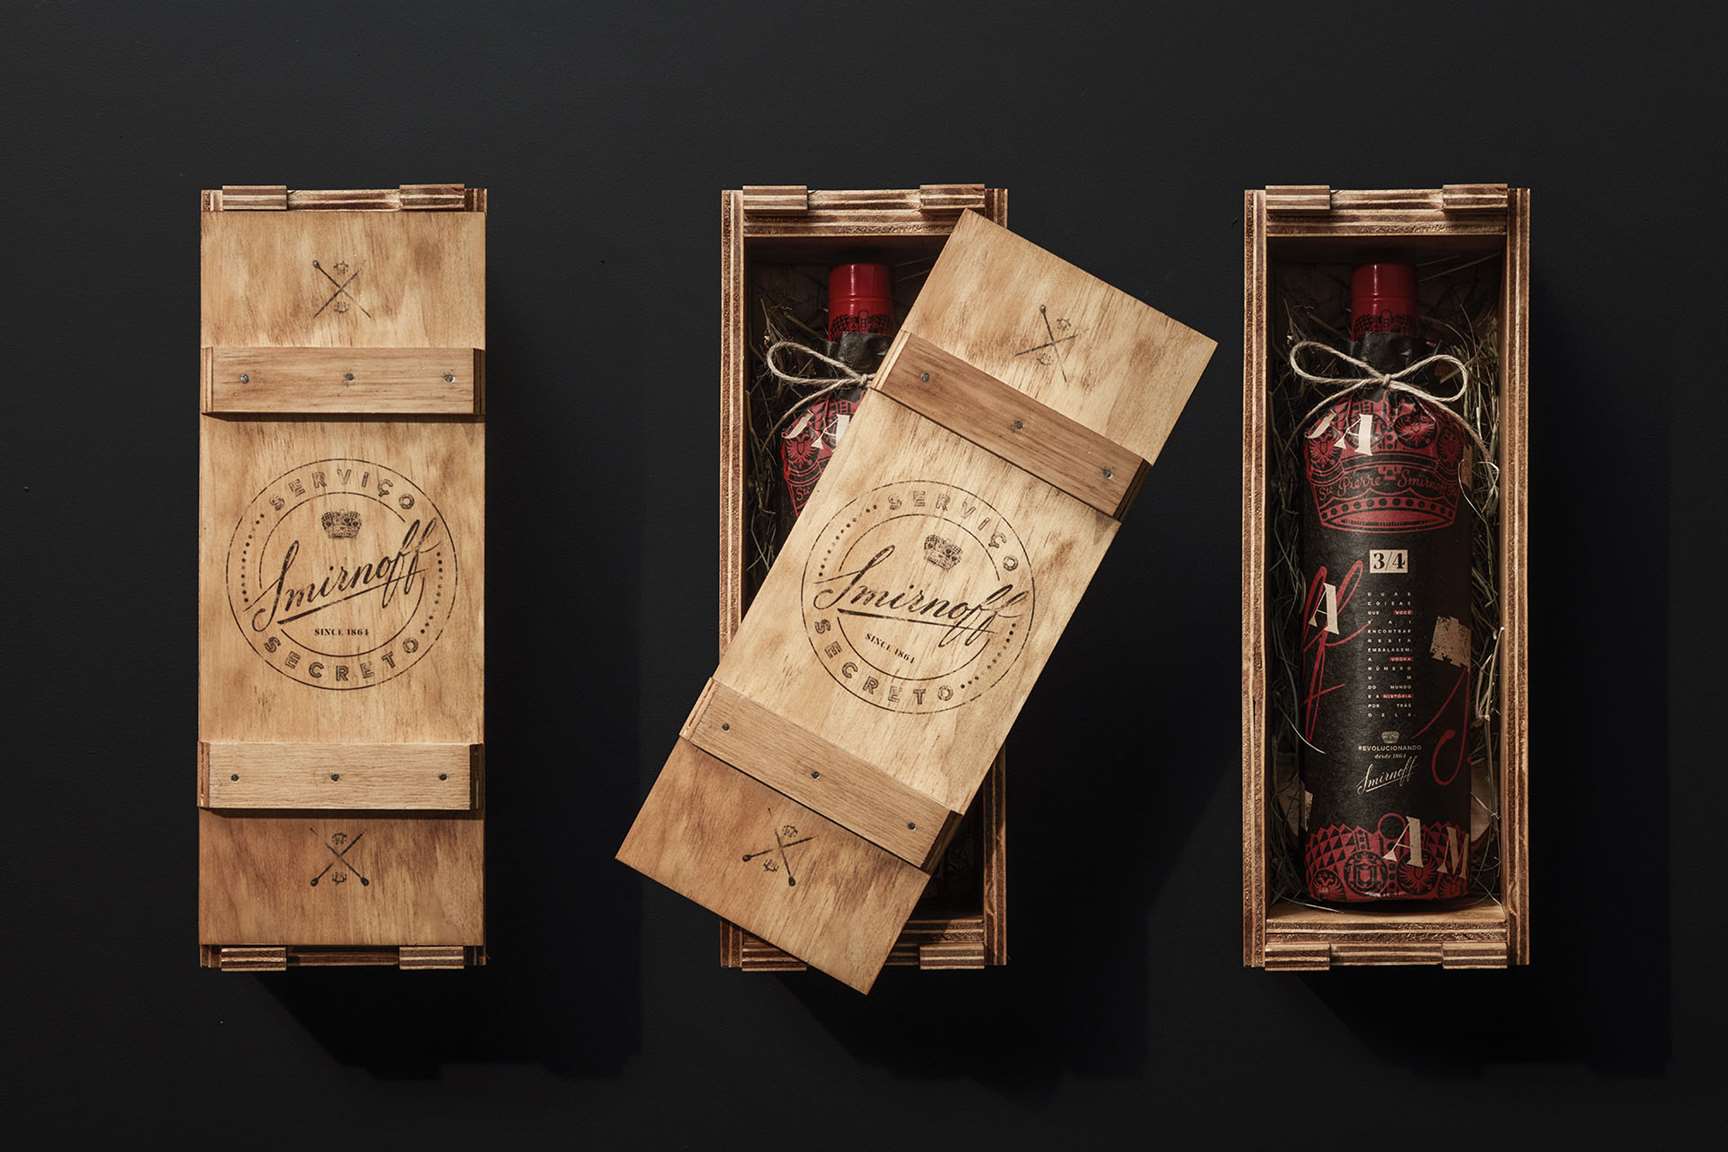 Smirnoff cria missão para descobrir a nova garrafa da marca